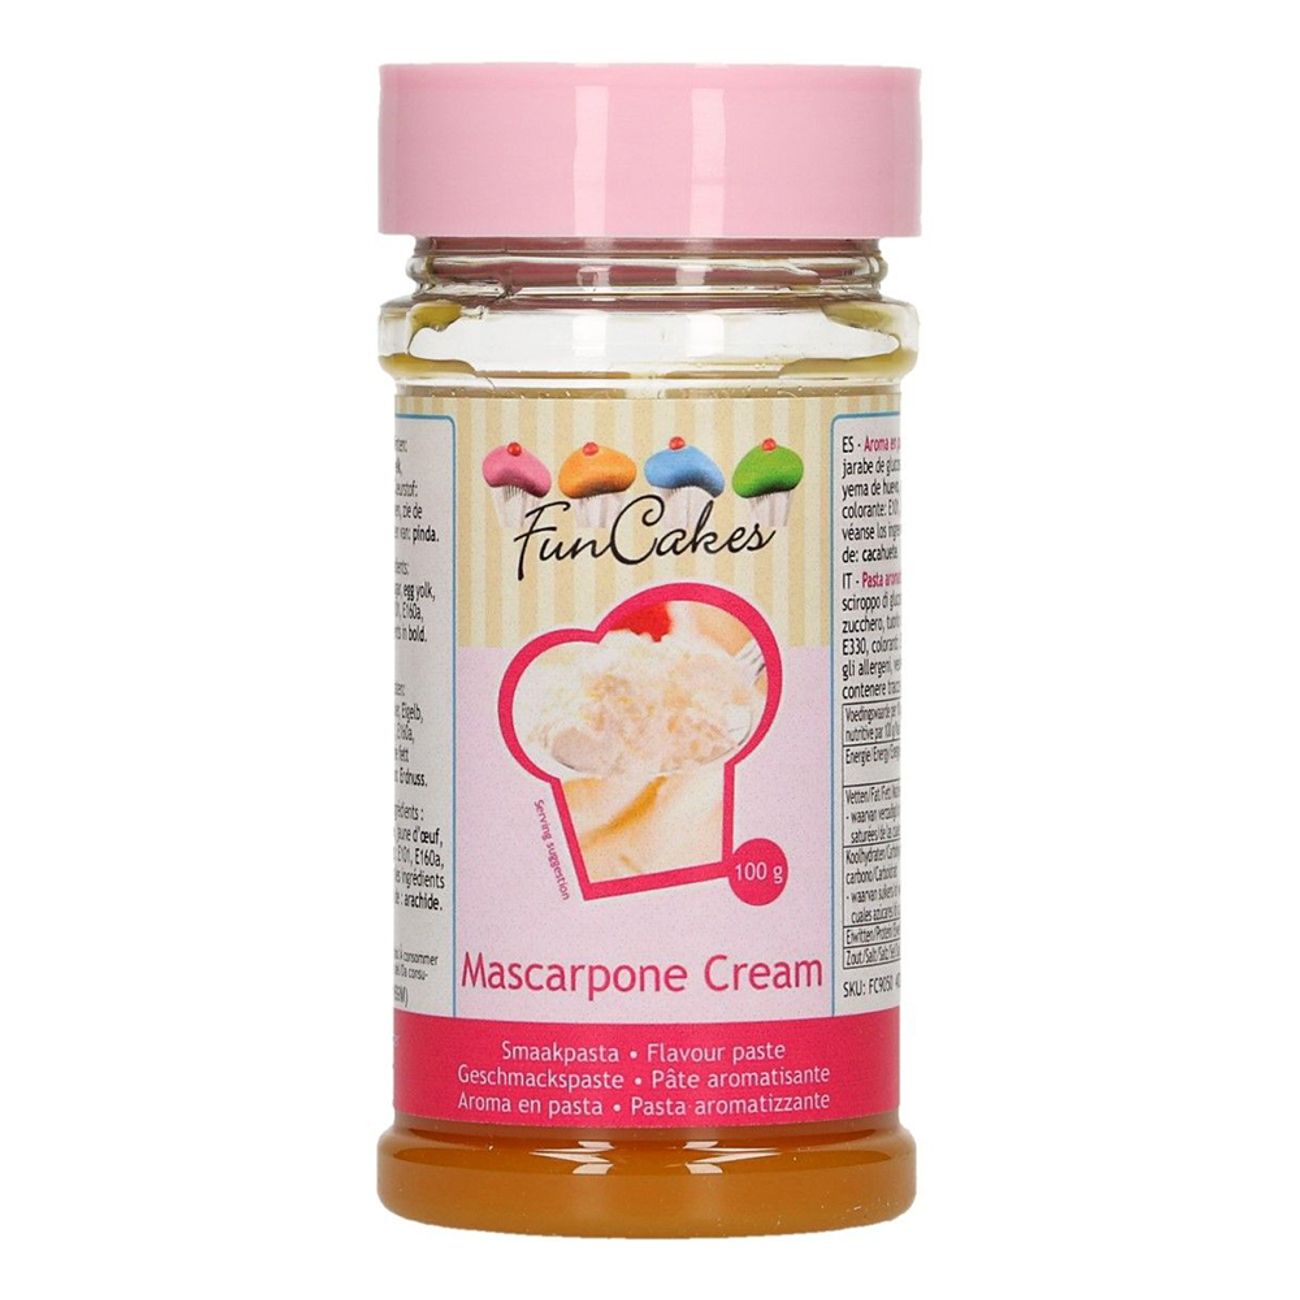 -funcakes-smaksattning-mascarpone-cream-75589-1